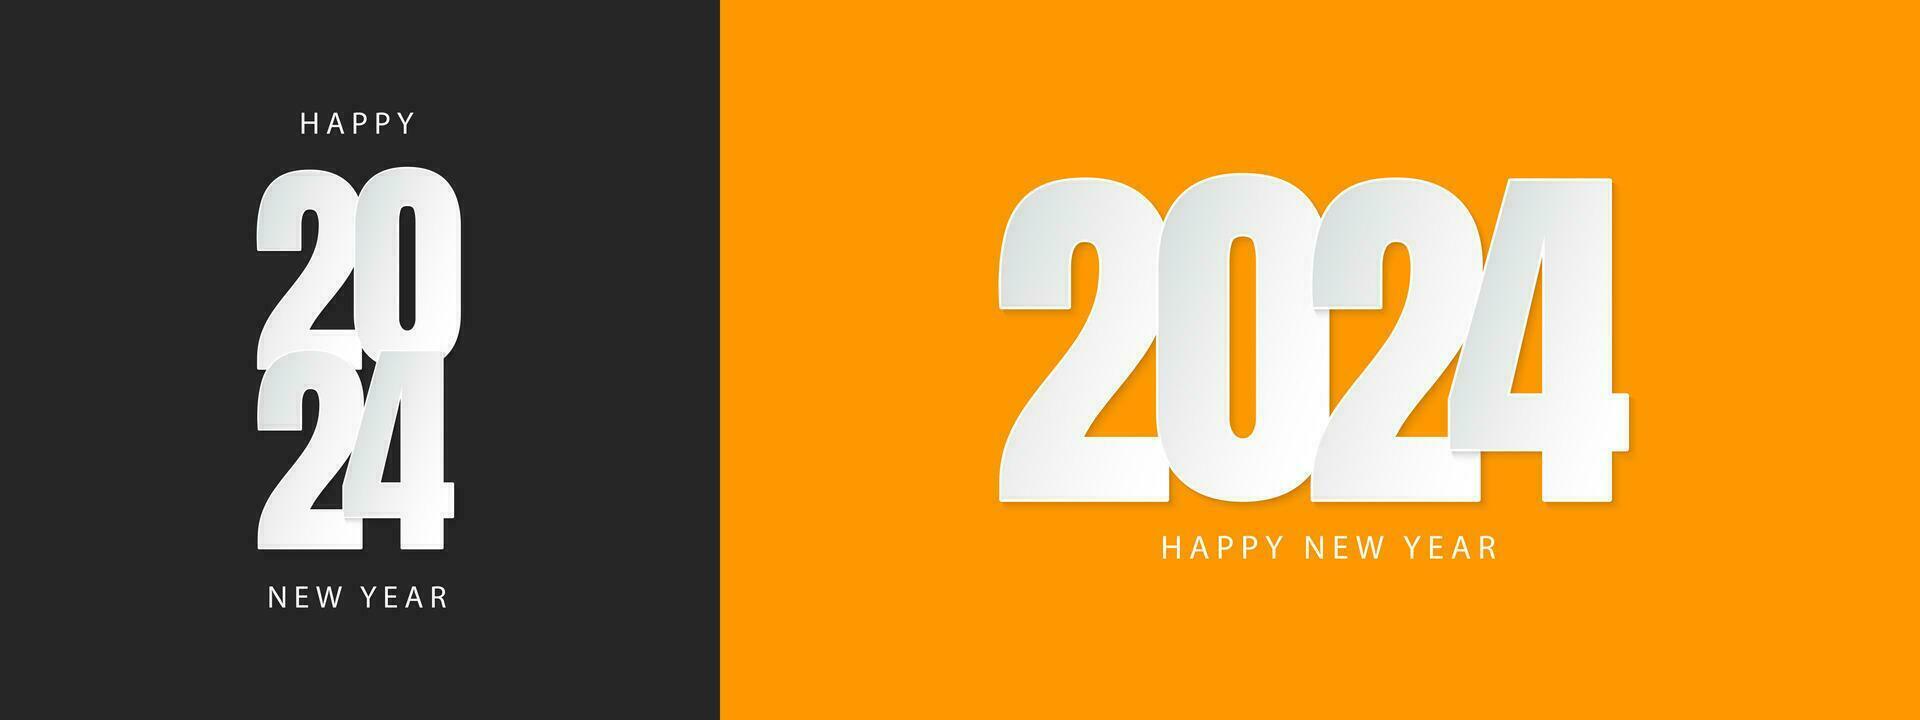 contento nuevo año 2024 diseño. de moda número ilustración diseño. vector modelo para bandera, póster, saludo y nuevo año 2024 celebracion